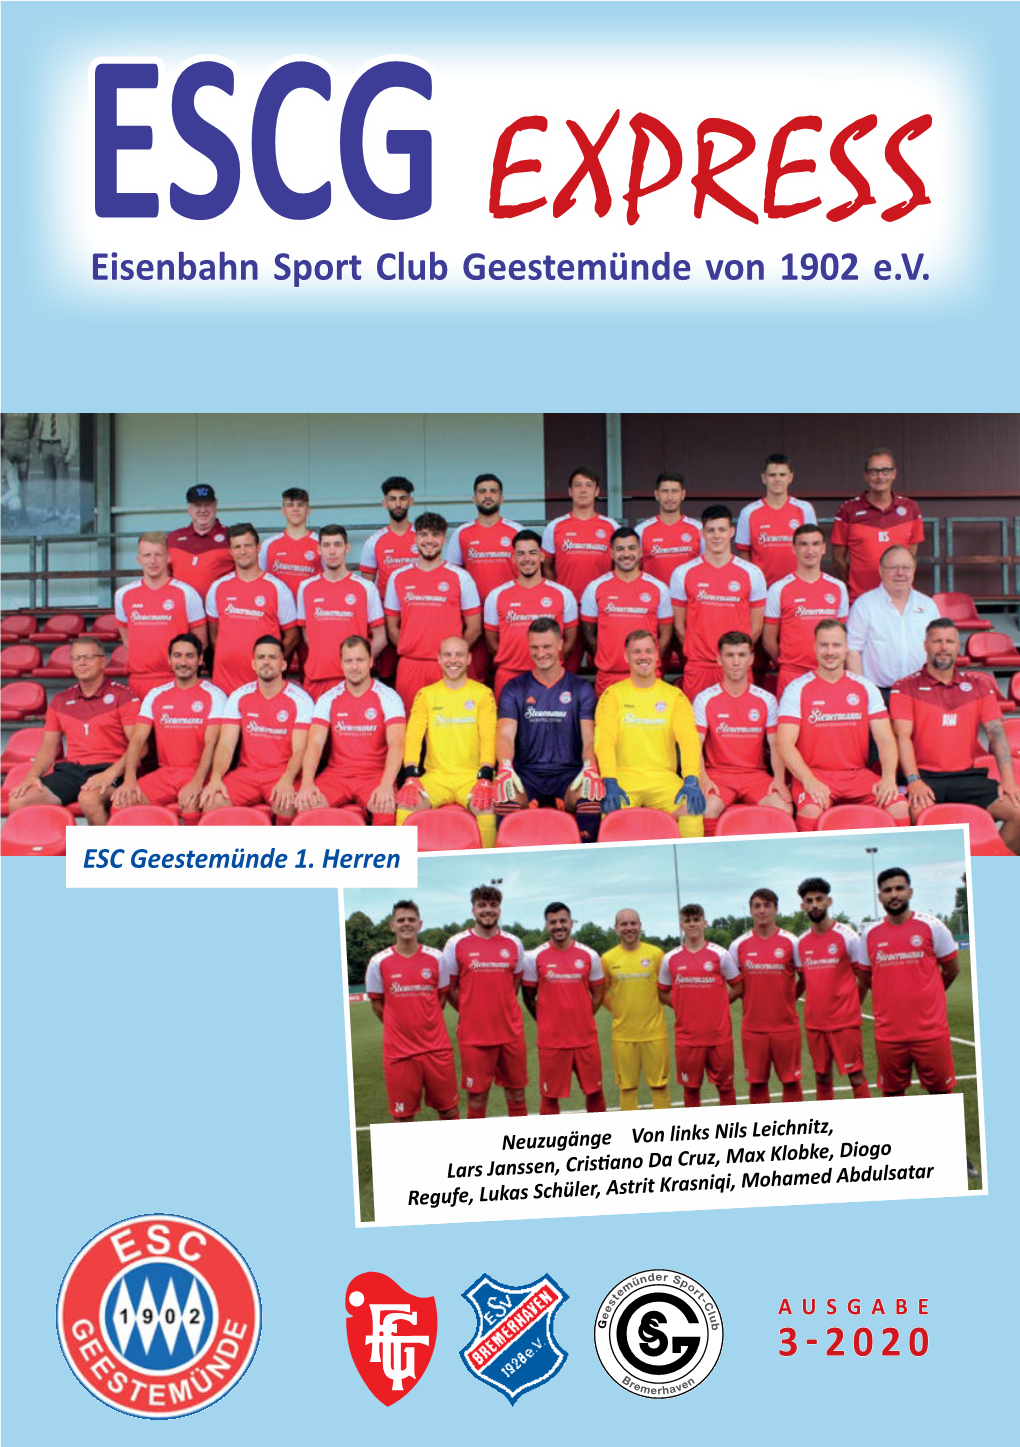 Eisenbahn Sport Club Geestemünde Von 1902 E.V